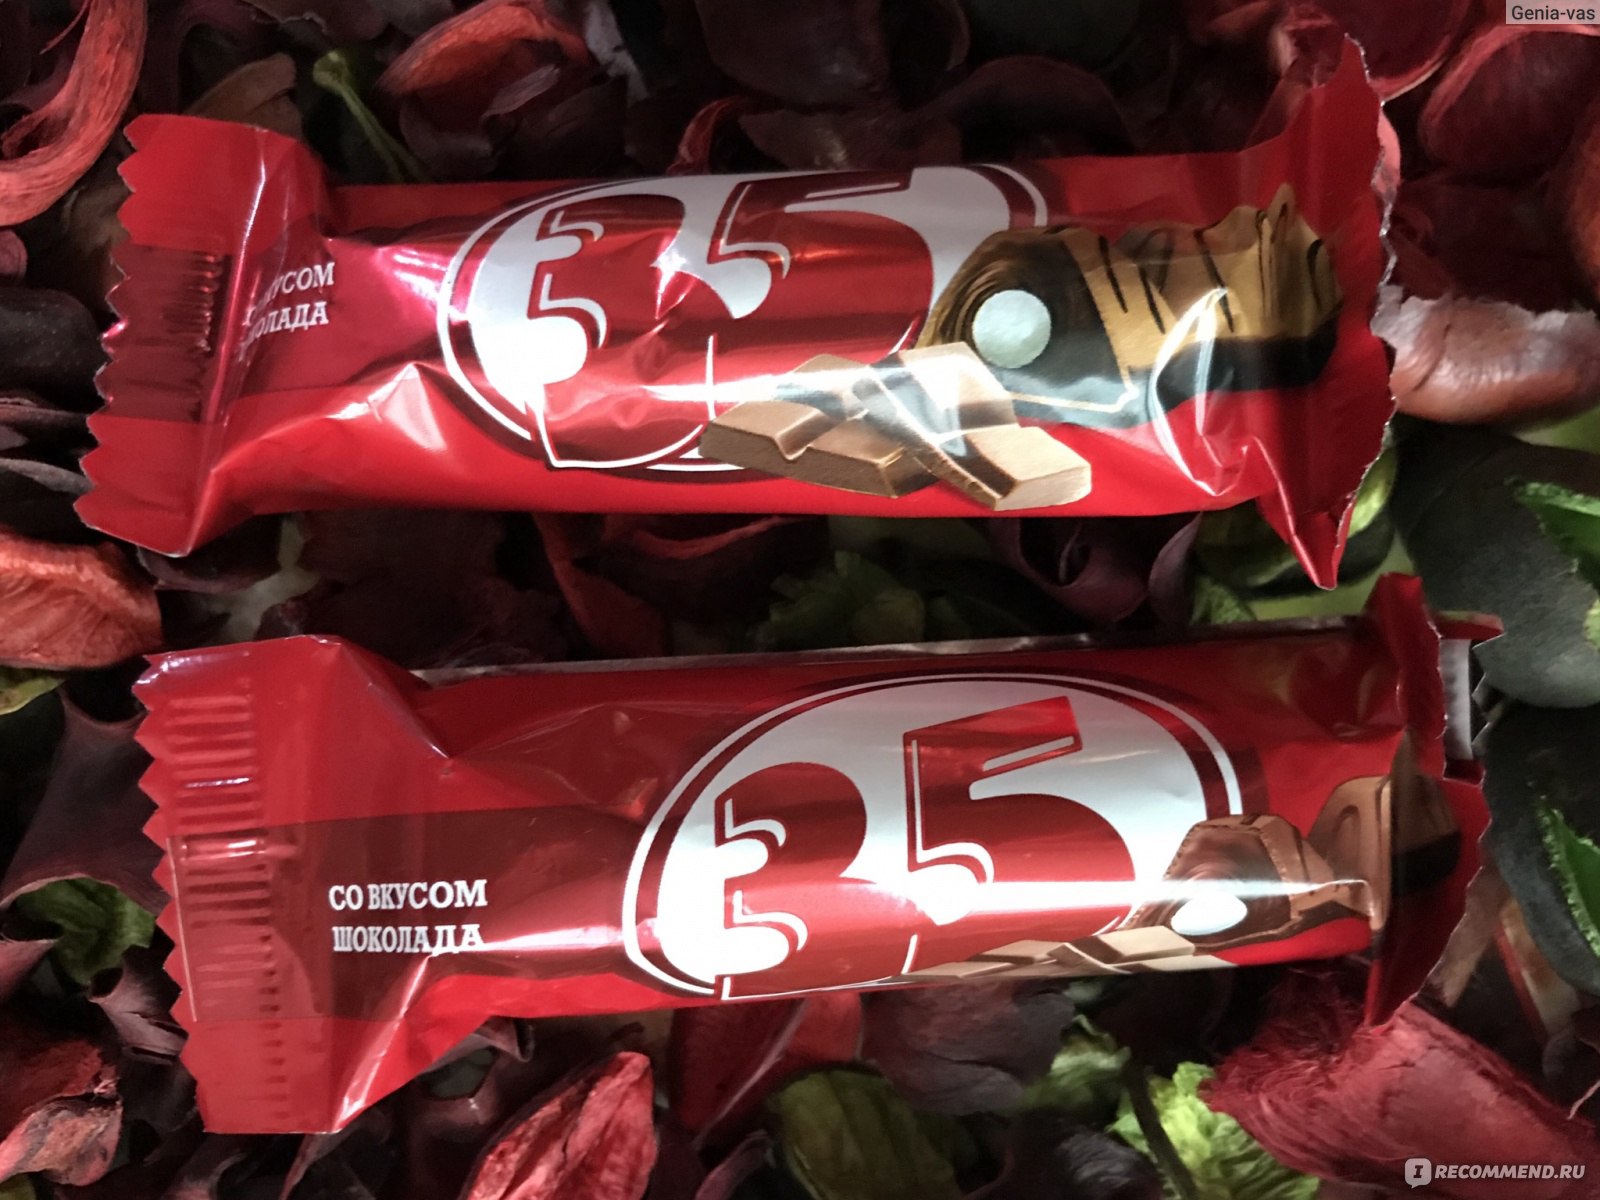 конфеты 35 с шоколадной начинкой фото